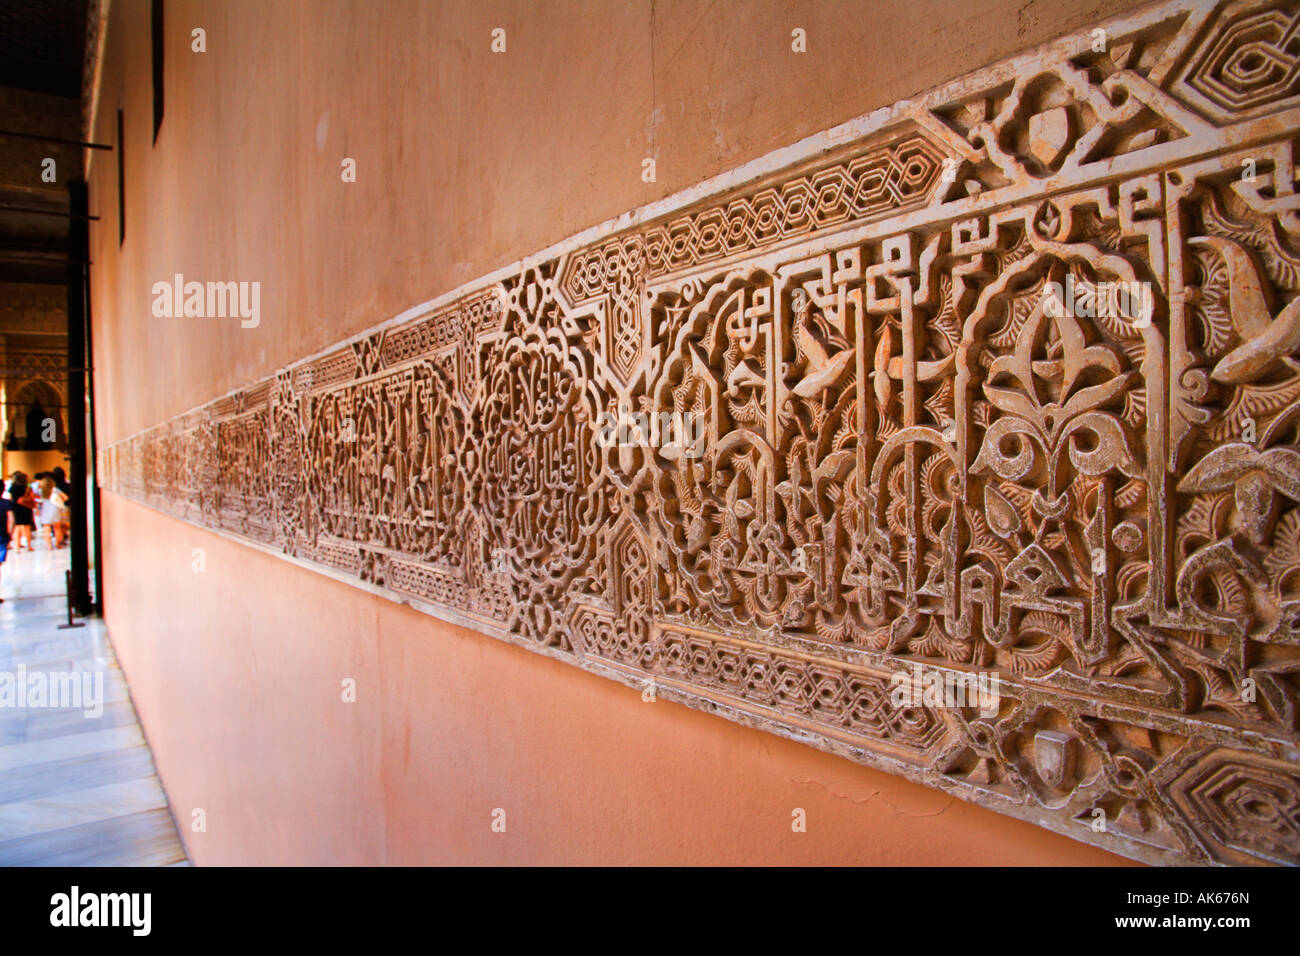 Détail de sculpture Patio de los Leones de l'Alhambra Grenade Espagne Banque D'Images